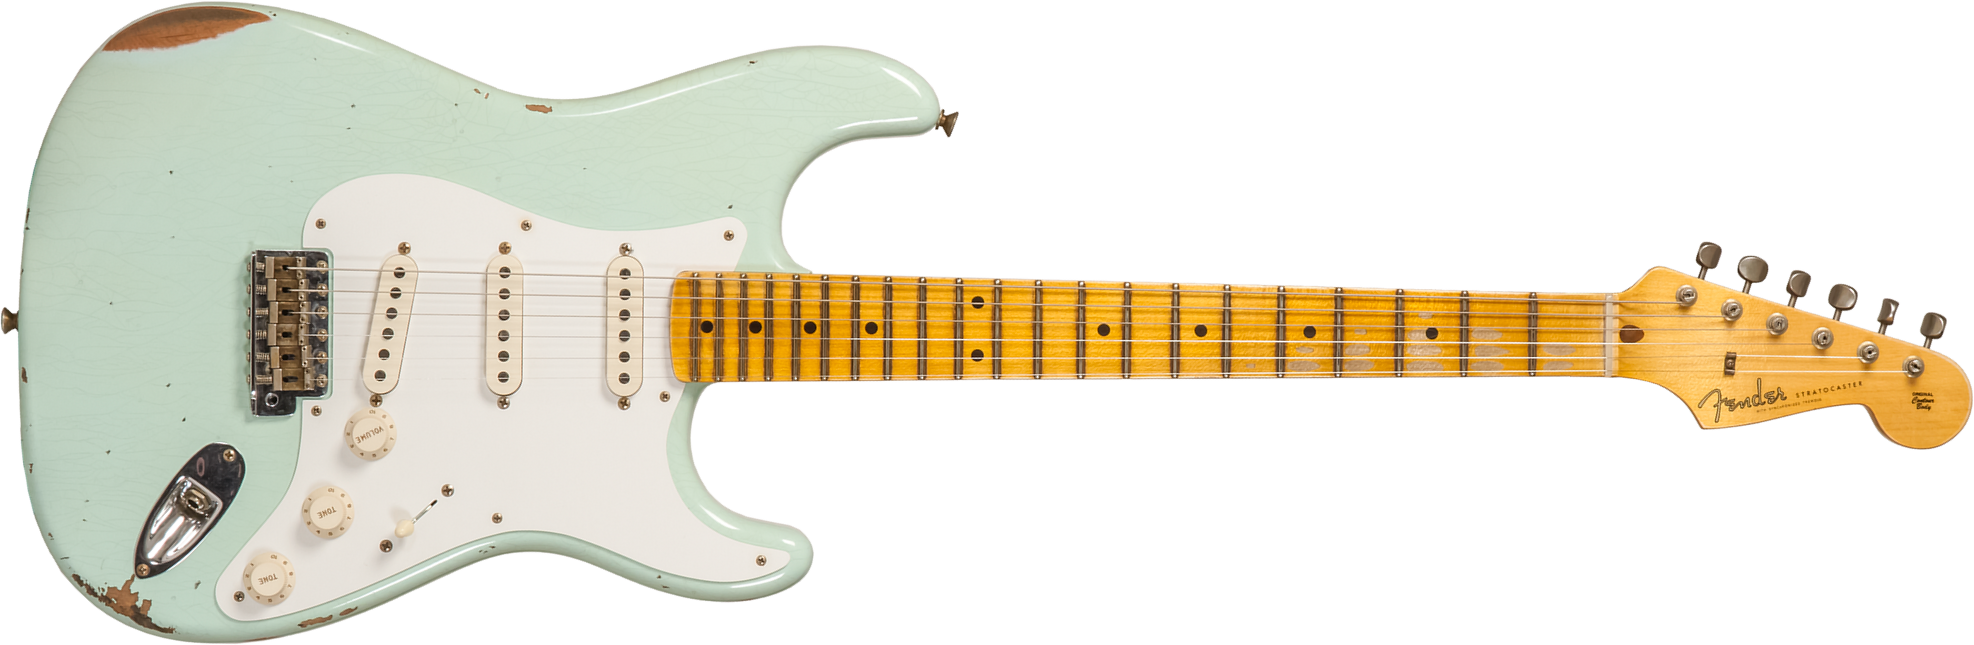 Fender Custom Shop Strat 1958 3s Trem Mn #cz572338 - Relic Aged Surf Green - Elektrische gitaar in Str-vorm - Main picture